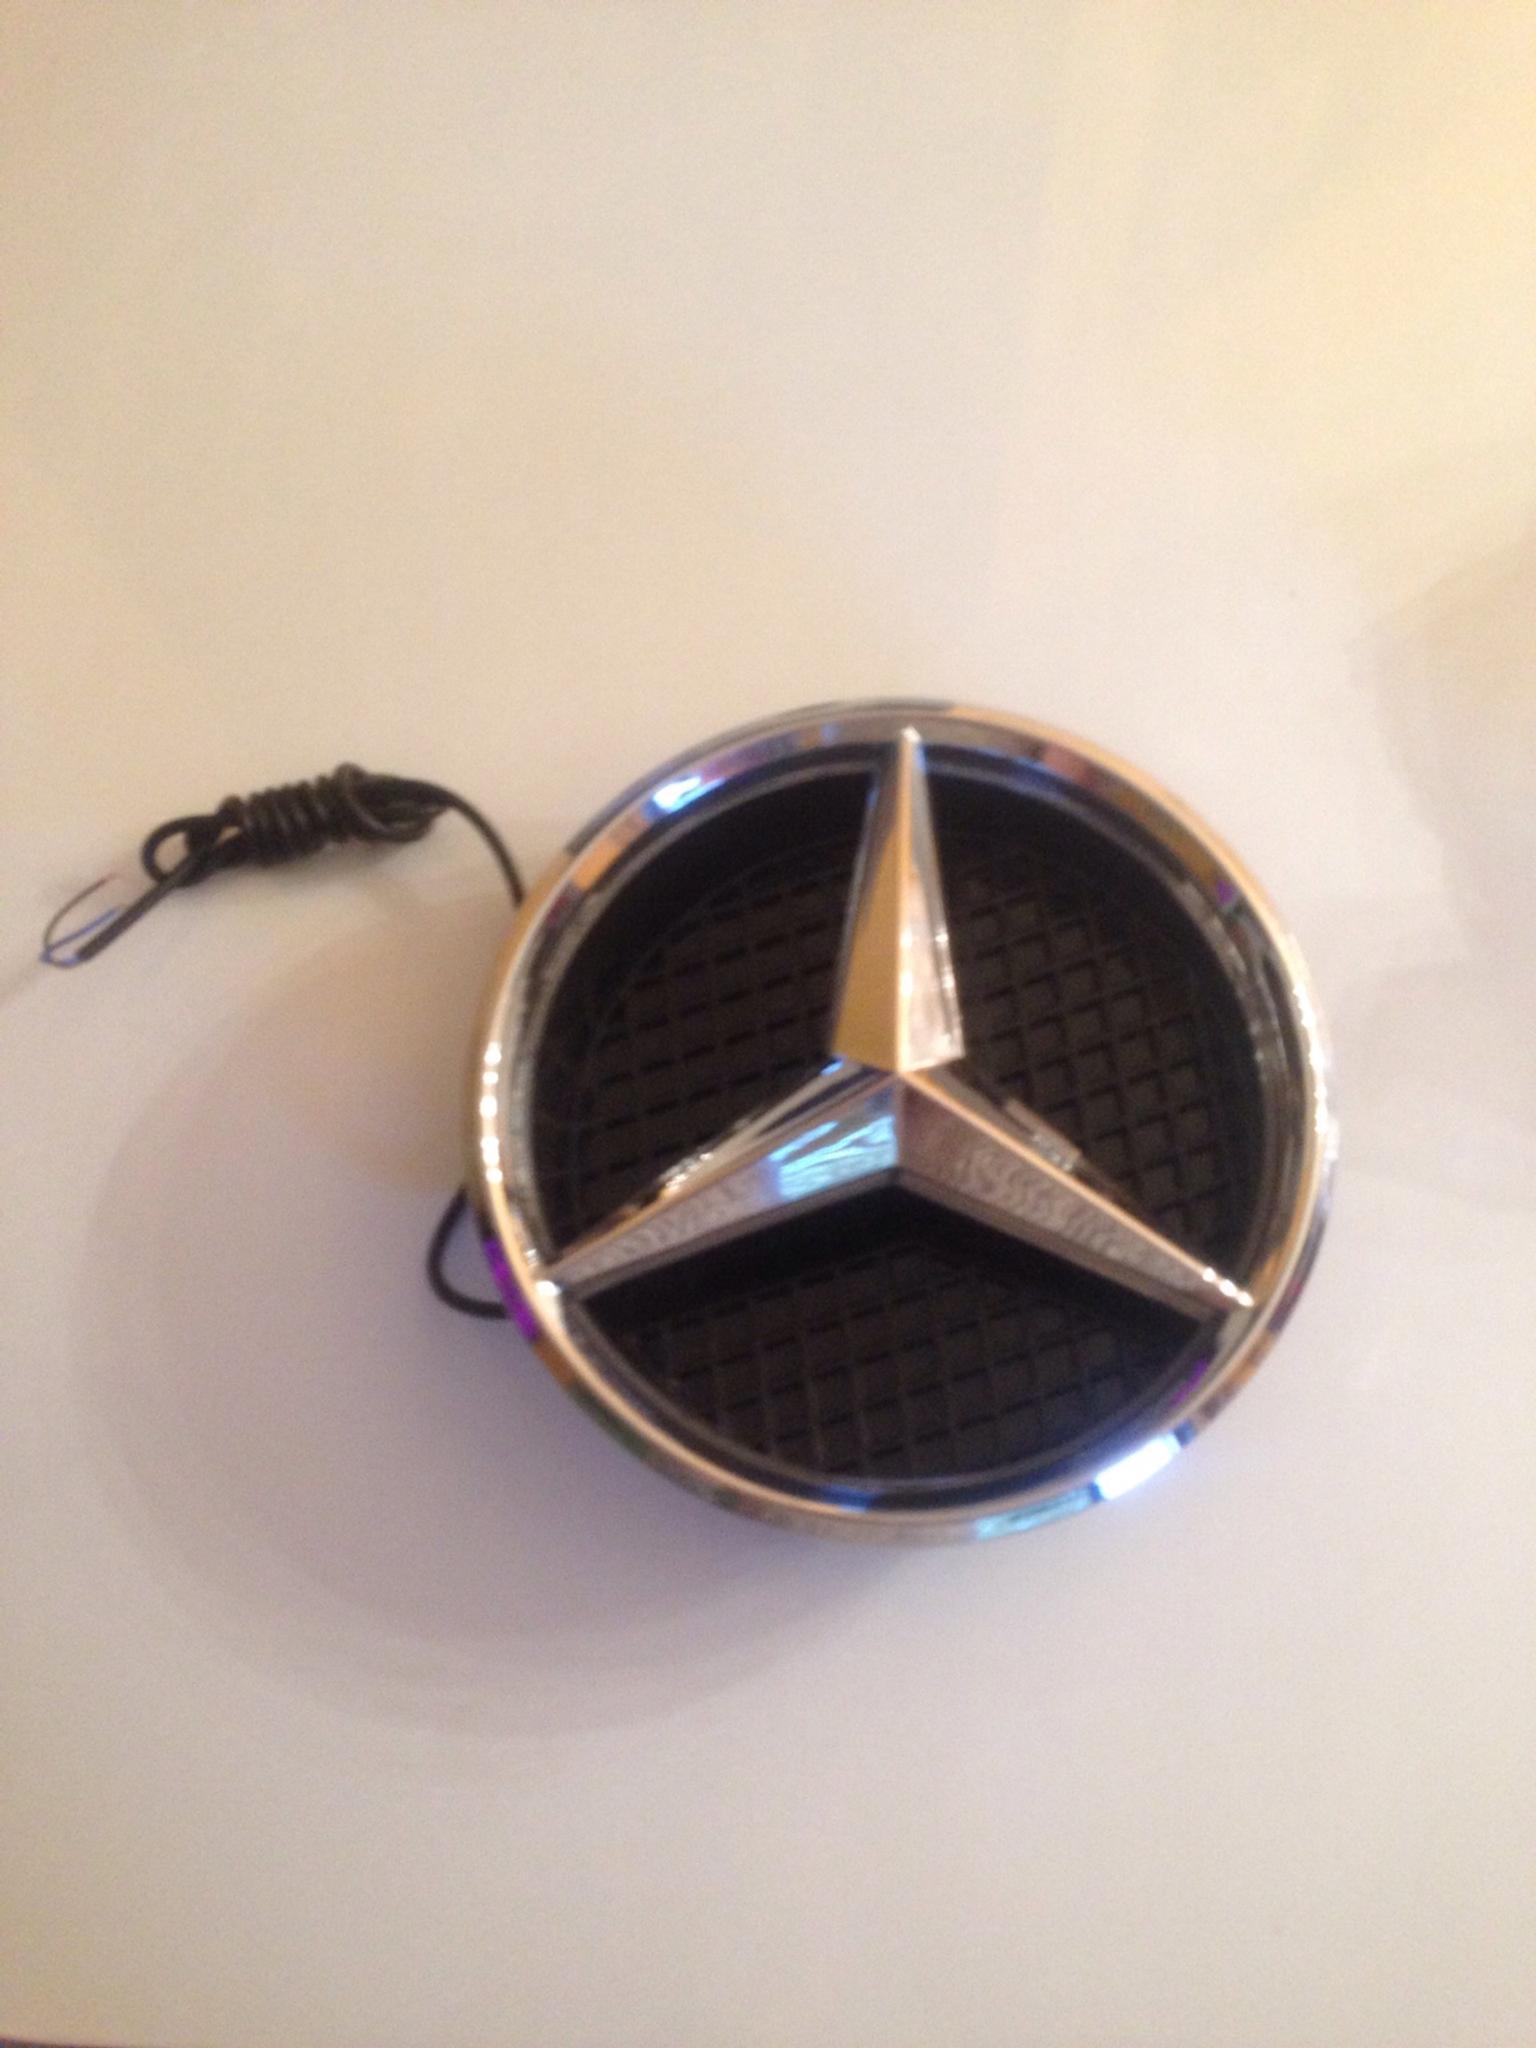 Mercedes Benz Stern Beleuchtet In 31137 Hildesheim Fur 45 00 Zum Verkauf Shpock At